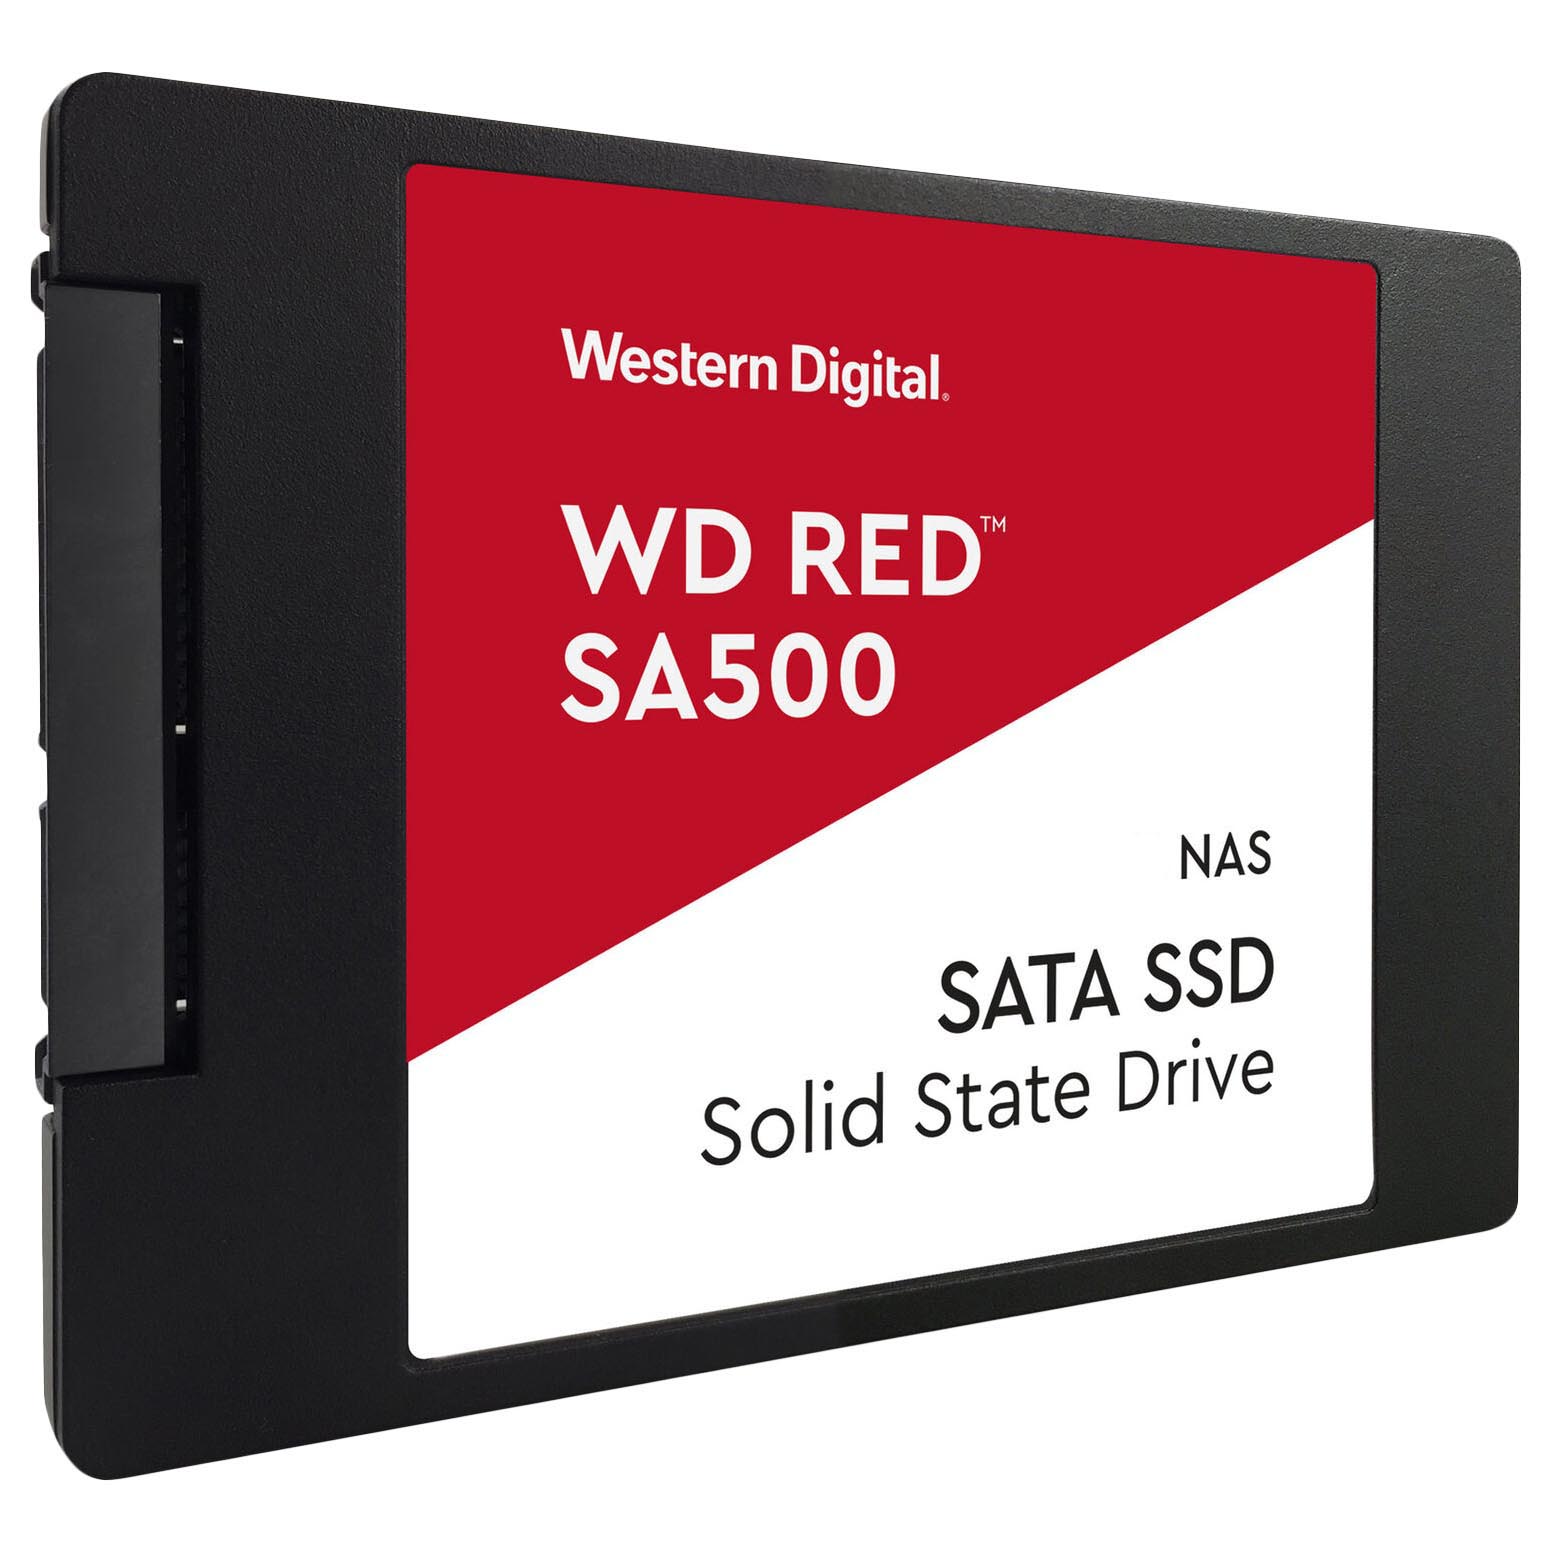 Внутренний твердотельный накопитель Western Digital WD Red SA500 NAS, WDS100T1R0A, 1Тб, 2,5 внутренний твердотельный накопитель western digital wd red sa500 nas wds100t1r0a 1тб 2 5